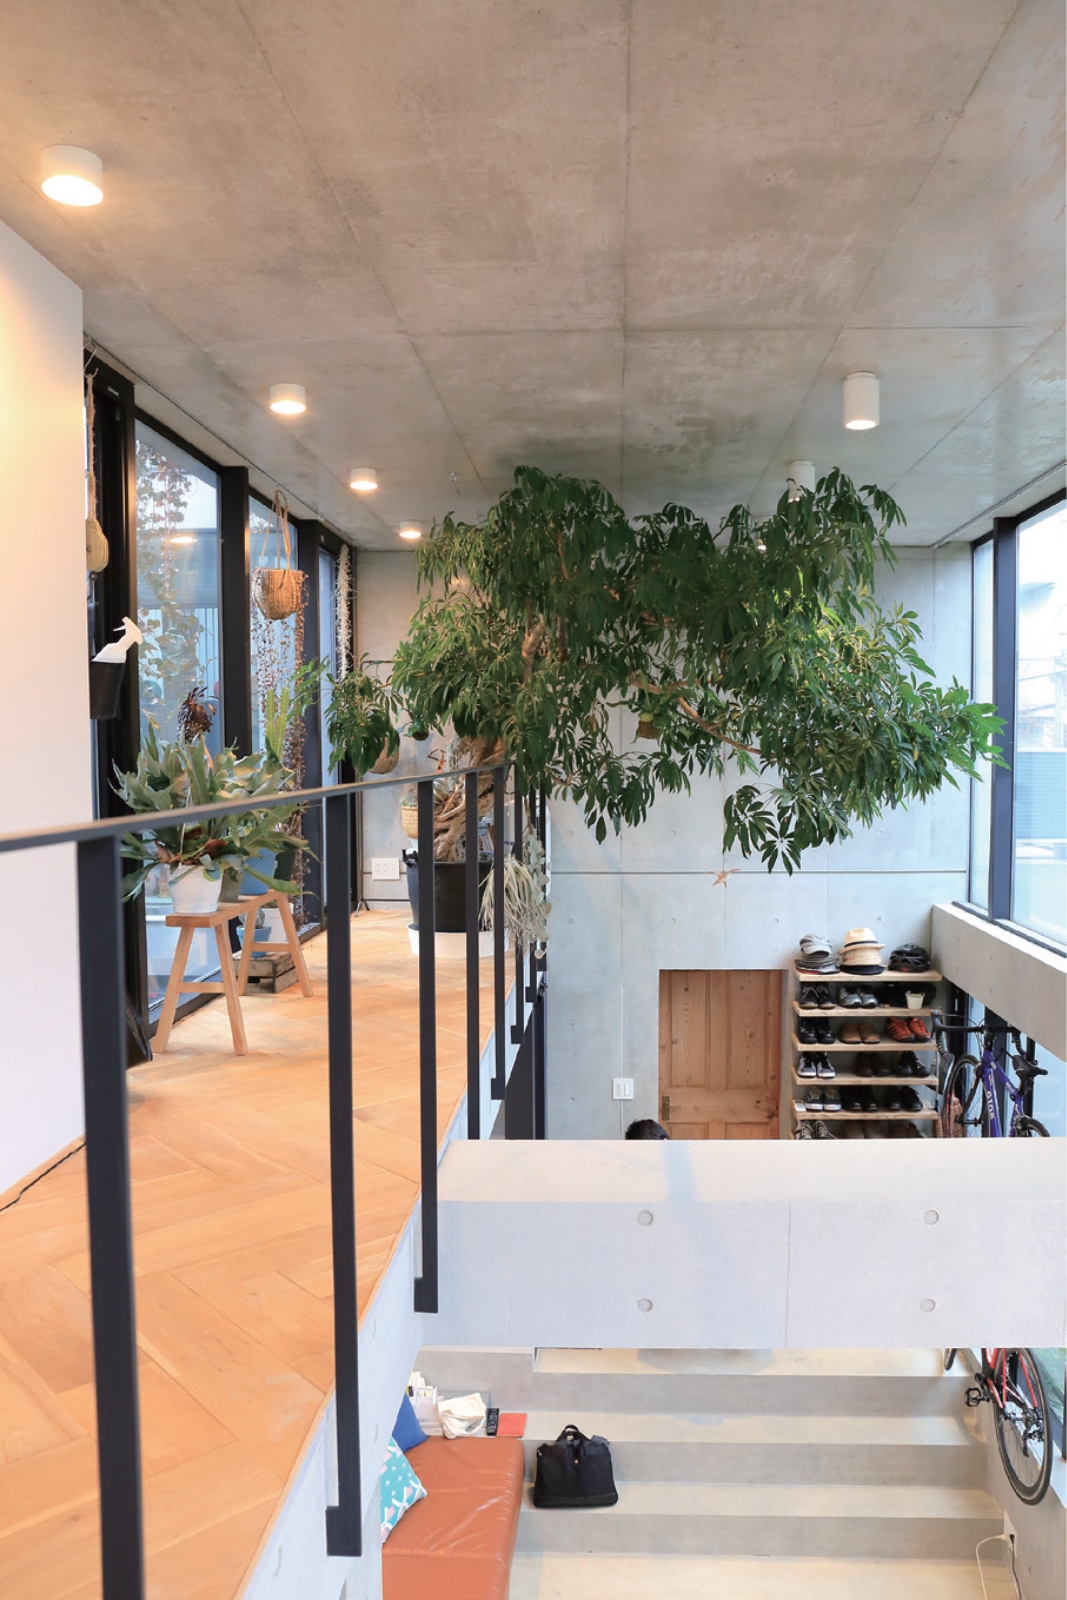 2階の細長いスペースは、 たくさんの植物を置いて緑を楽しむ場所。